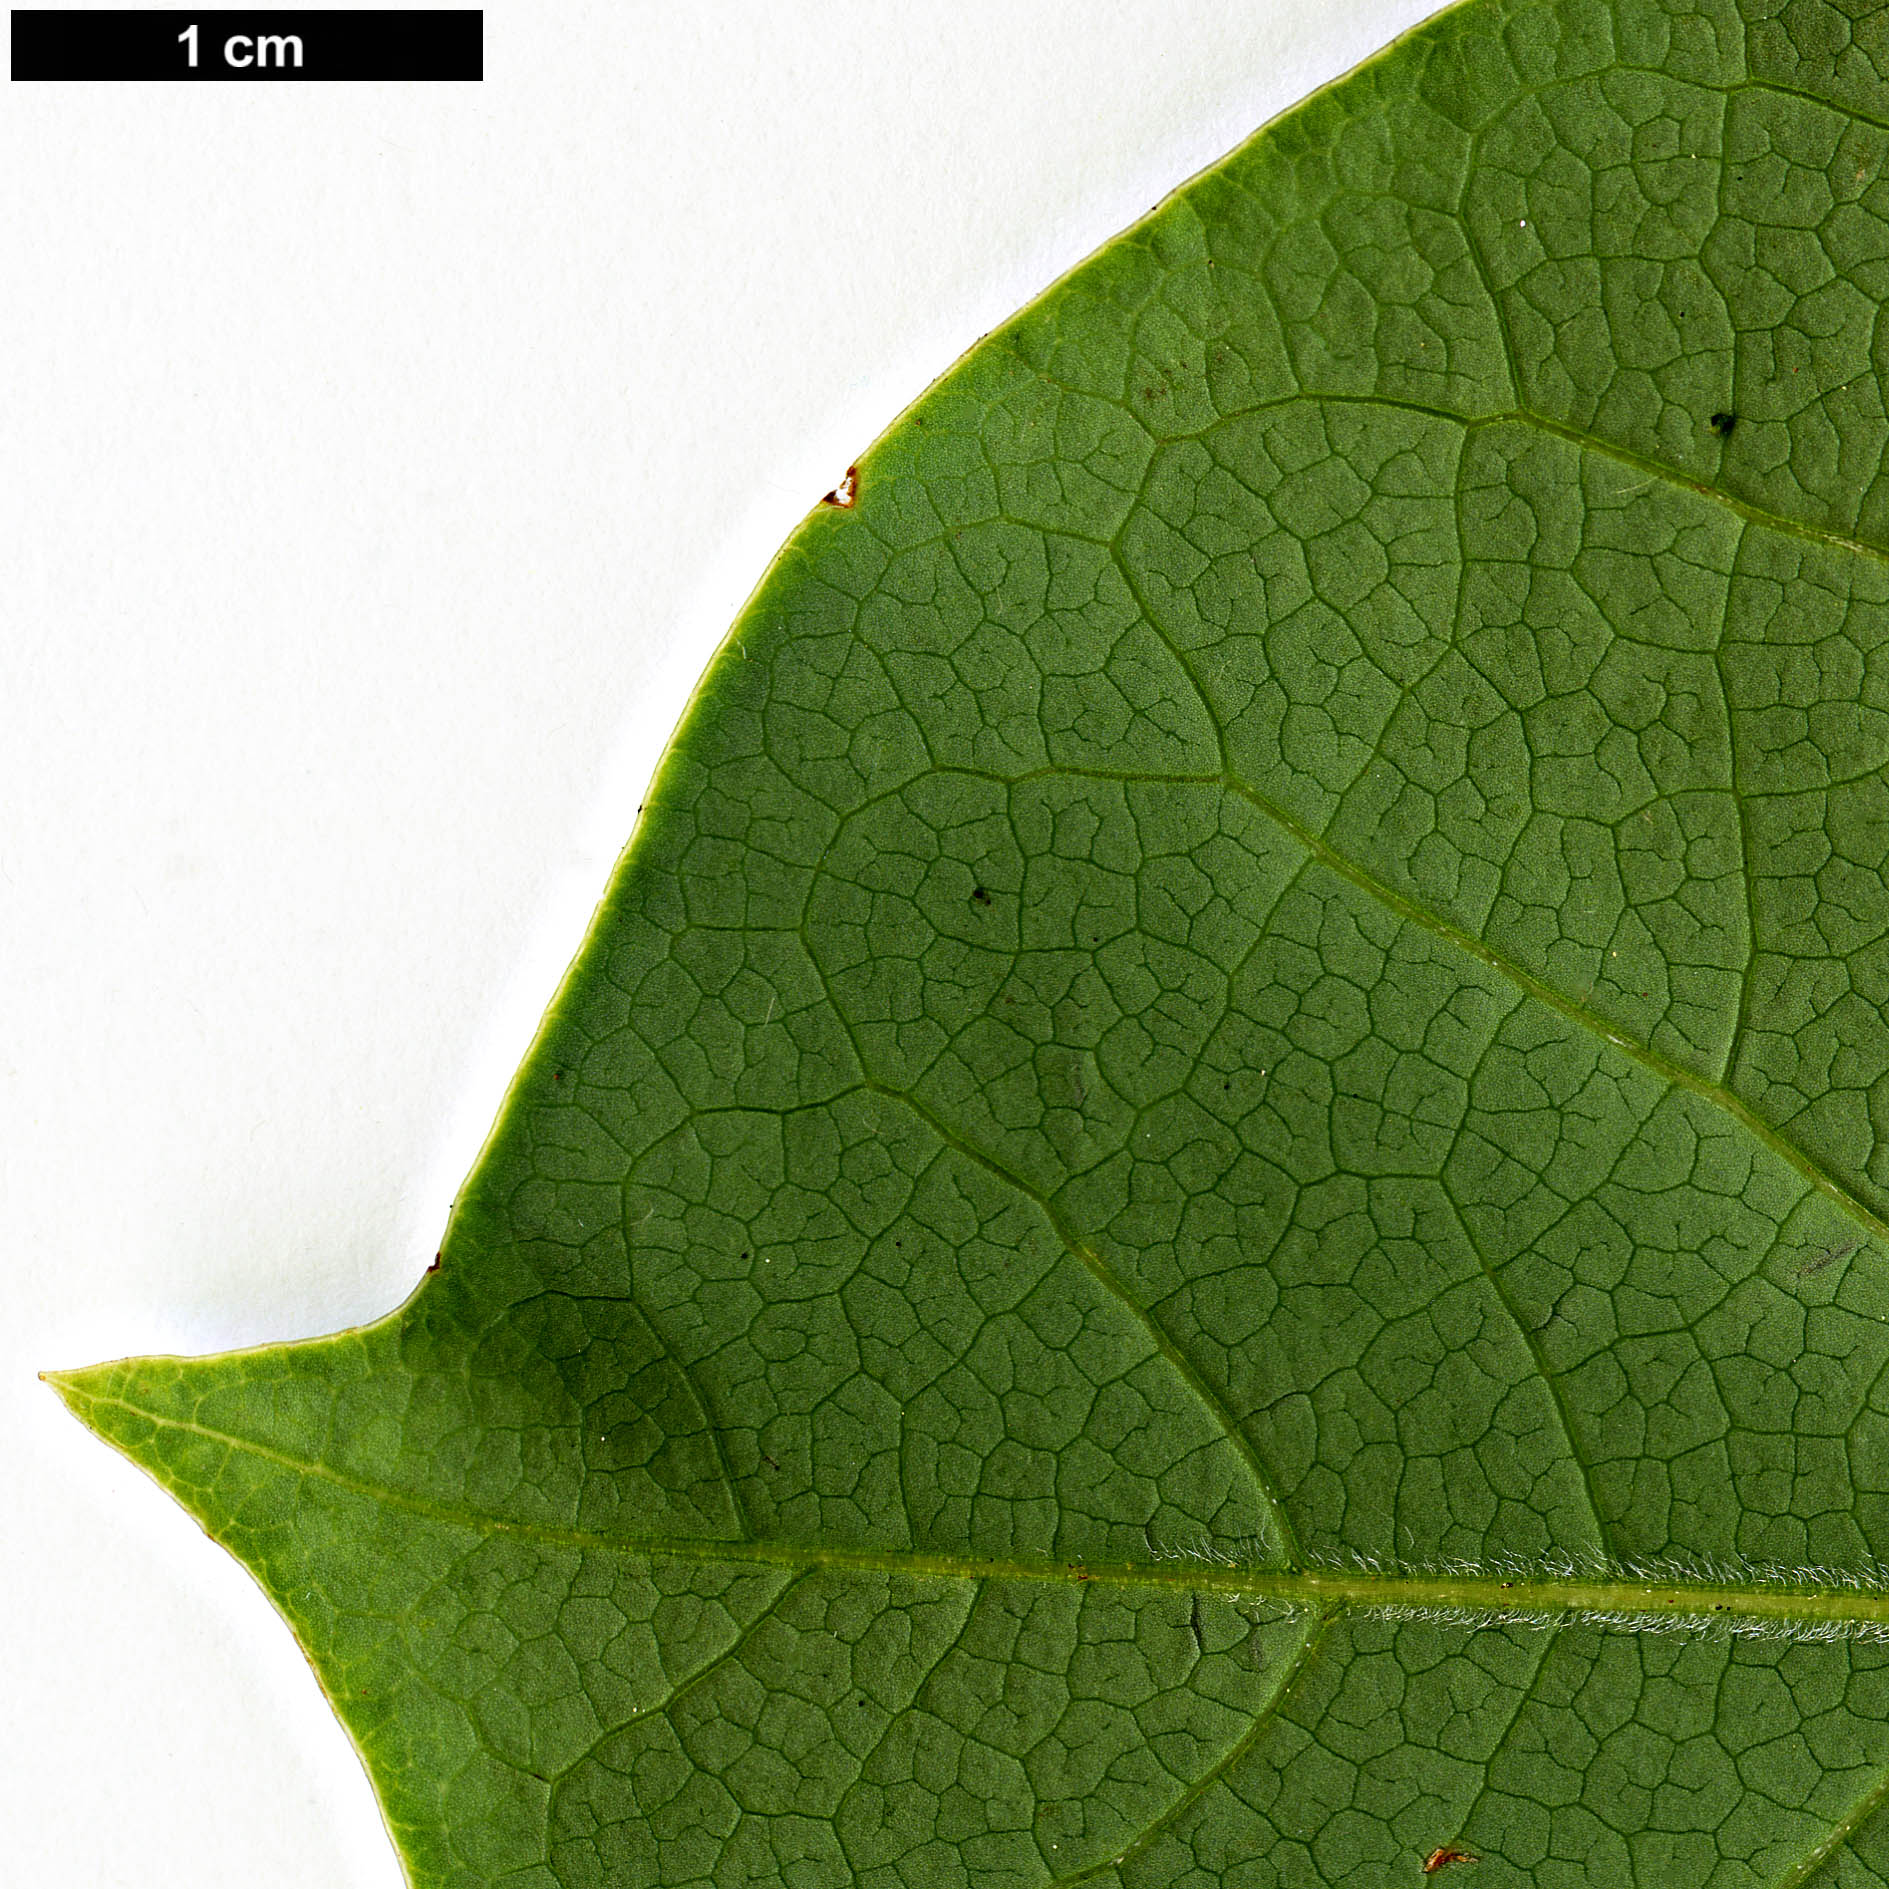 High resolution image: Family: Magnoliaceae - Genus: Magnolia - Taxon: sprengeri